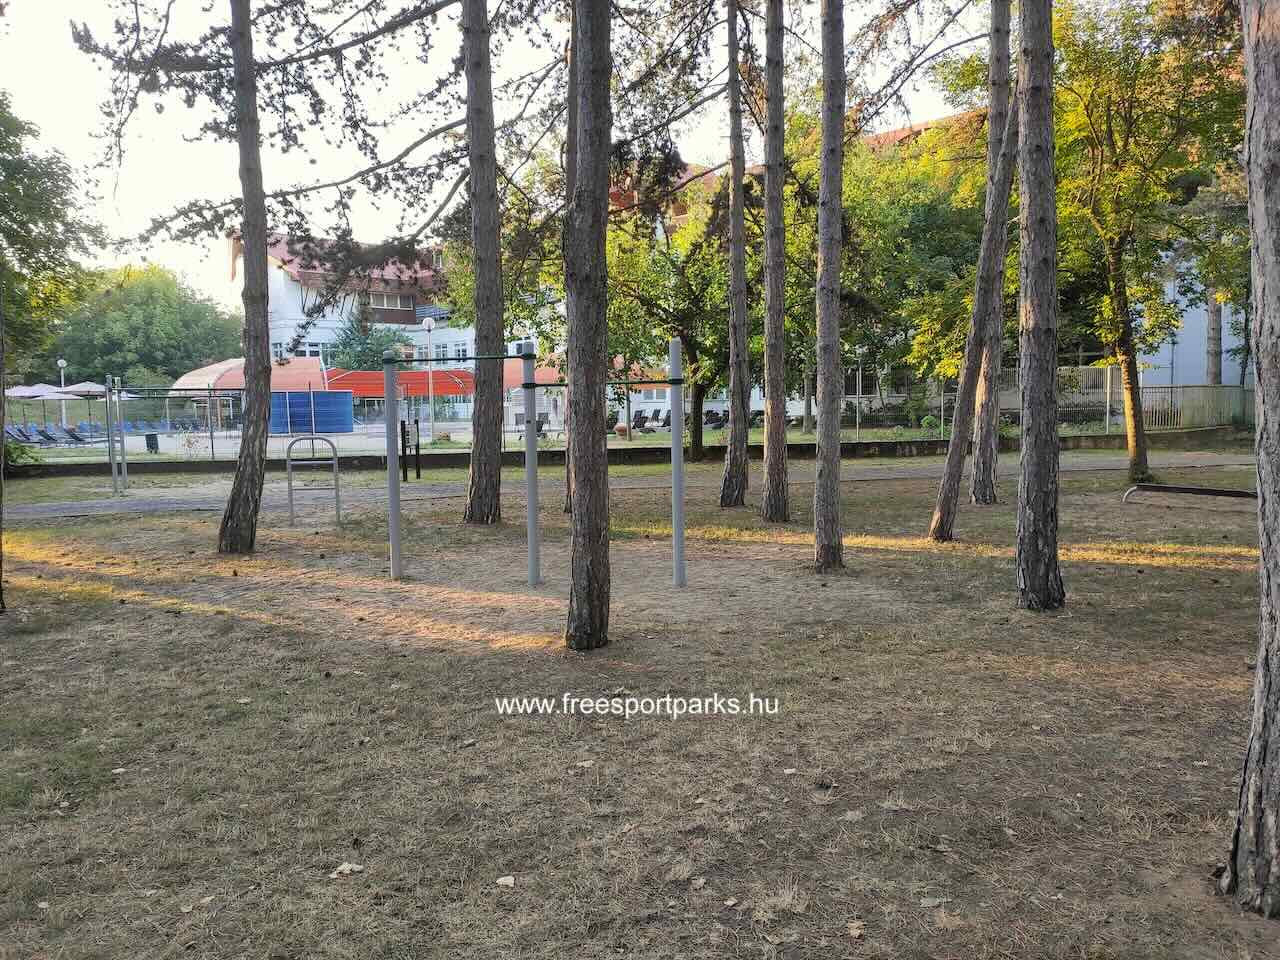 kondipark az erdőben, Nagyerdei szabadidőpark, Debrecen - Free Sport Parks Térkép